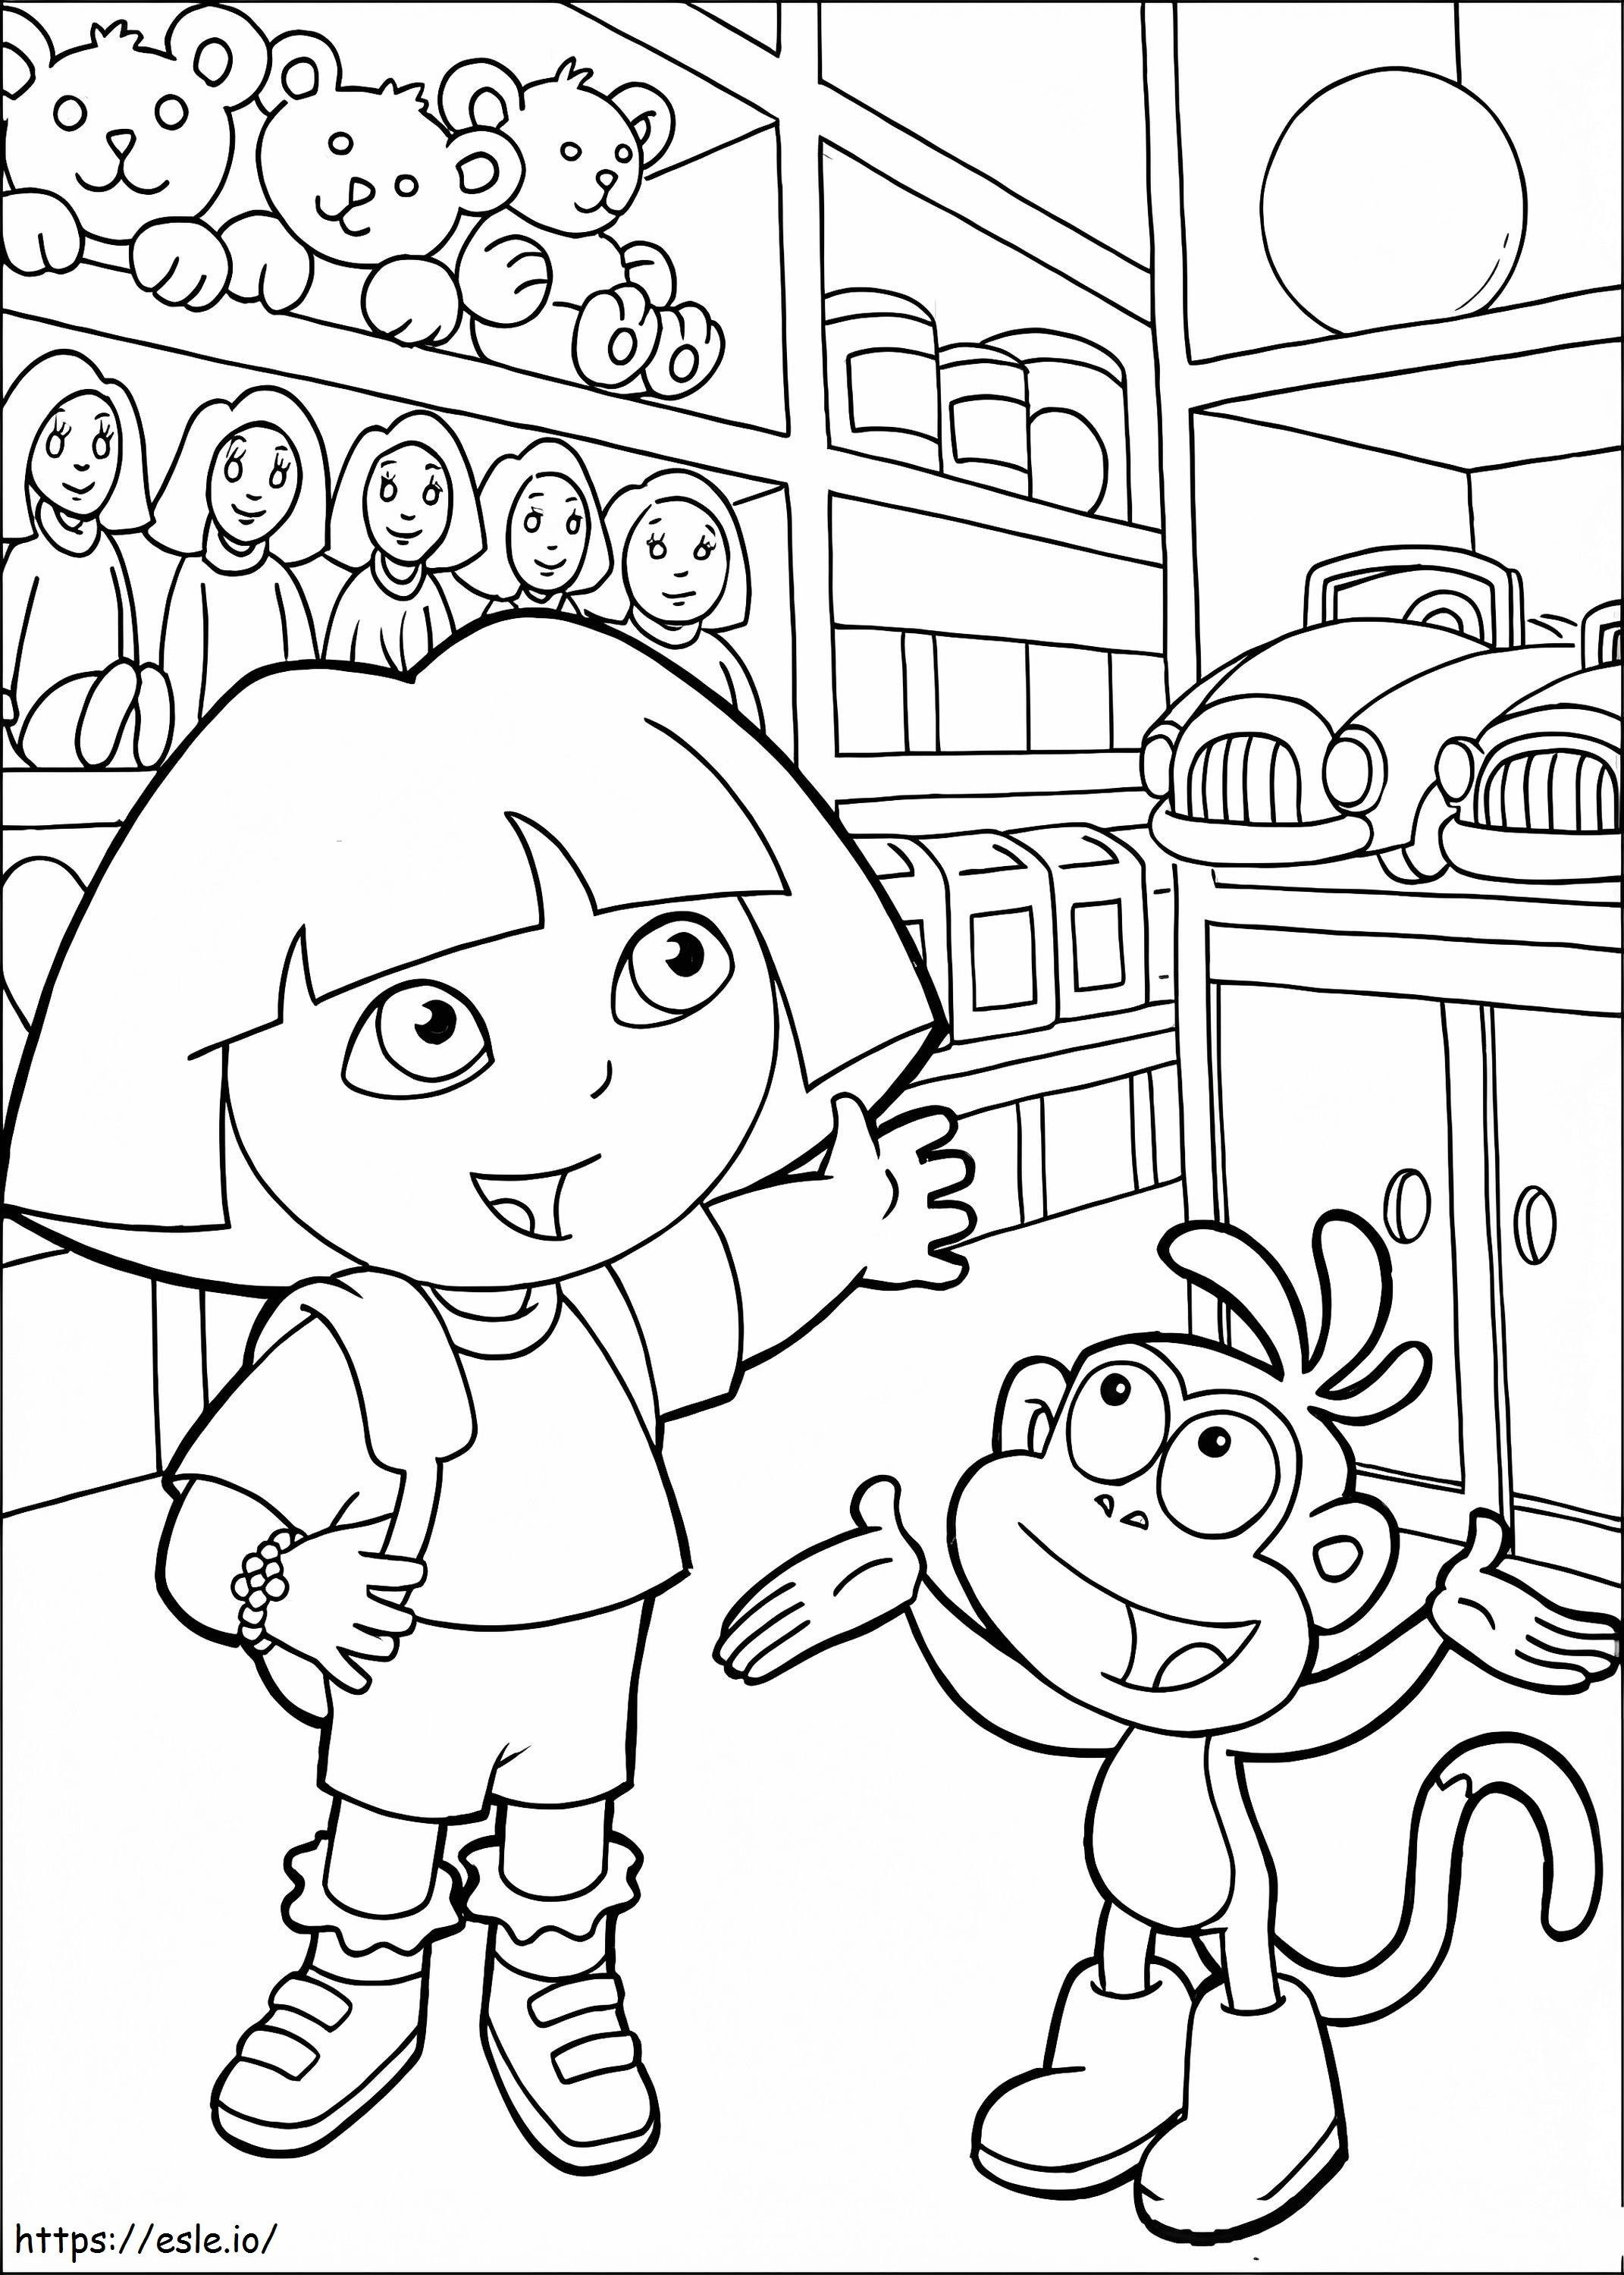 Dora im Spielzeugladen ausmalbilder